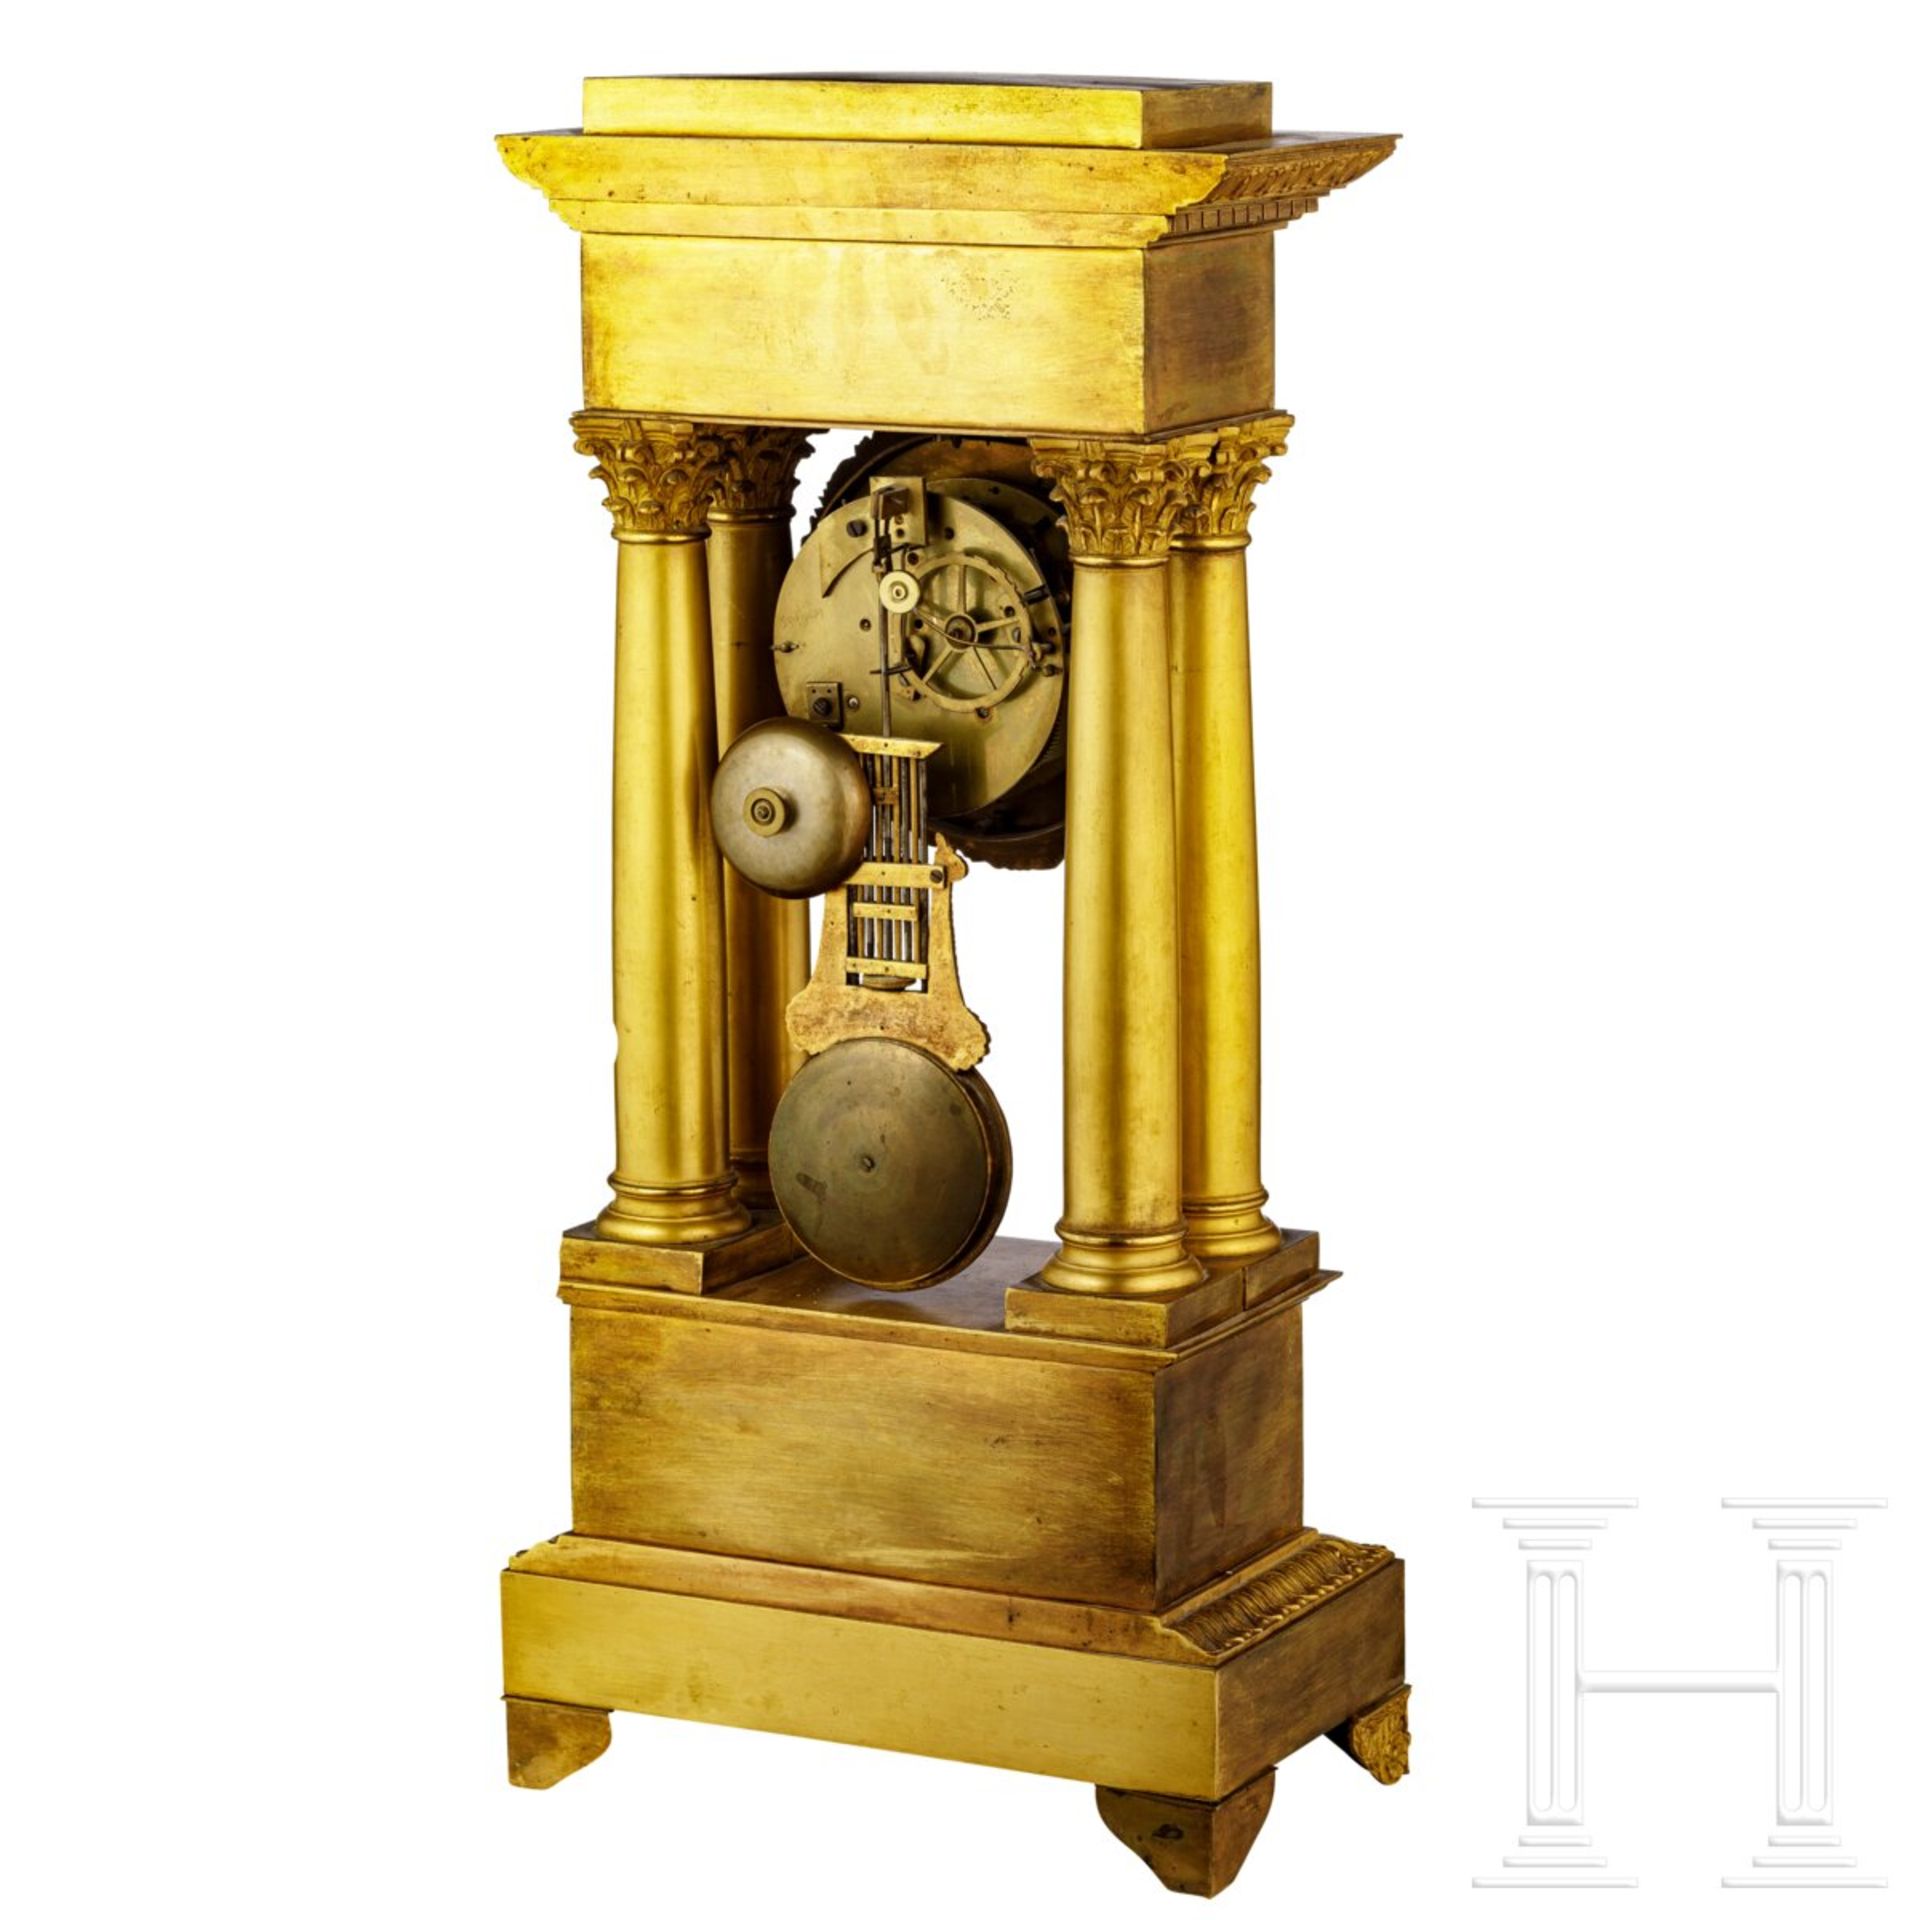 Feuervergoldete Portikus-Uhr, Frankreich, Restorationszeit, um 1820/30 - Image 2 of 4